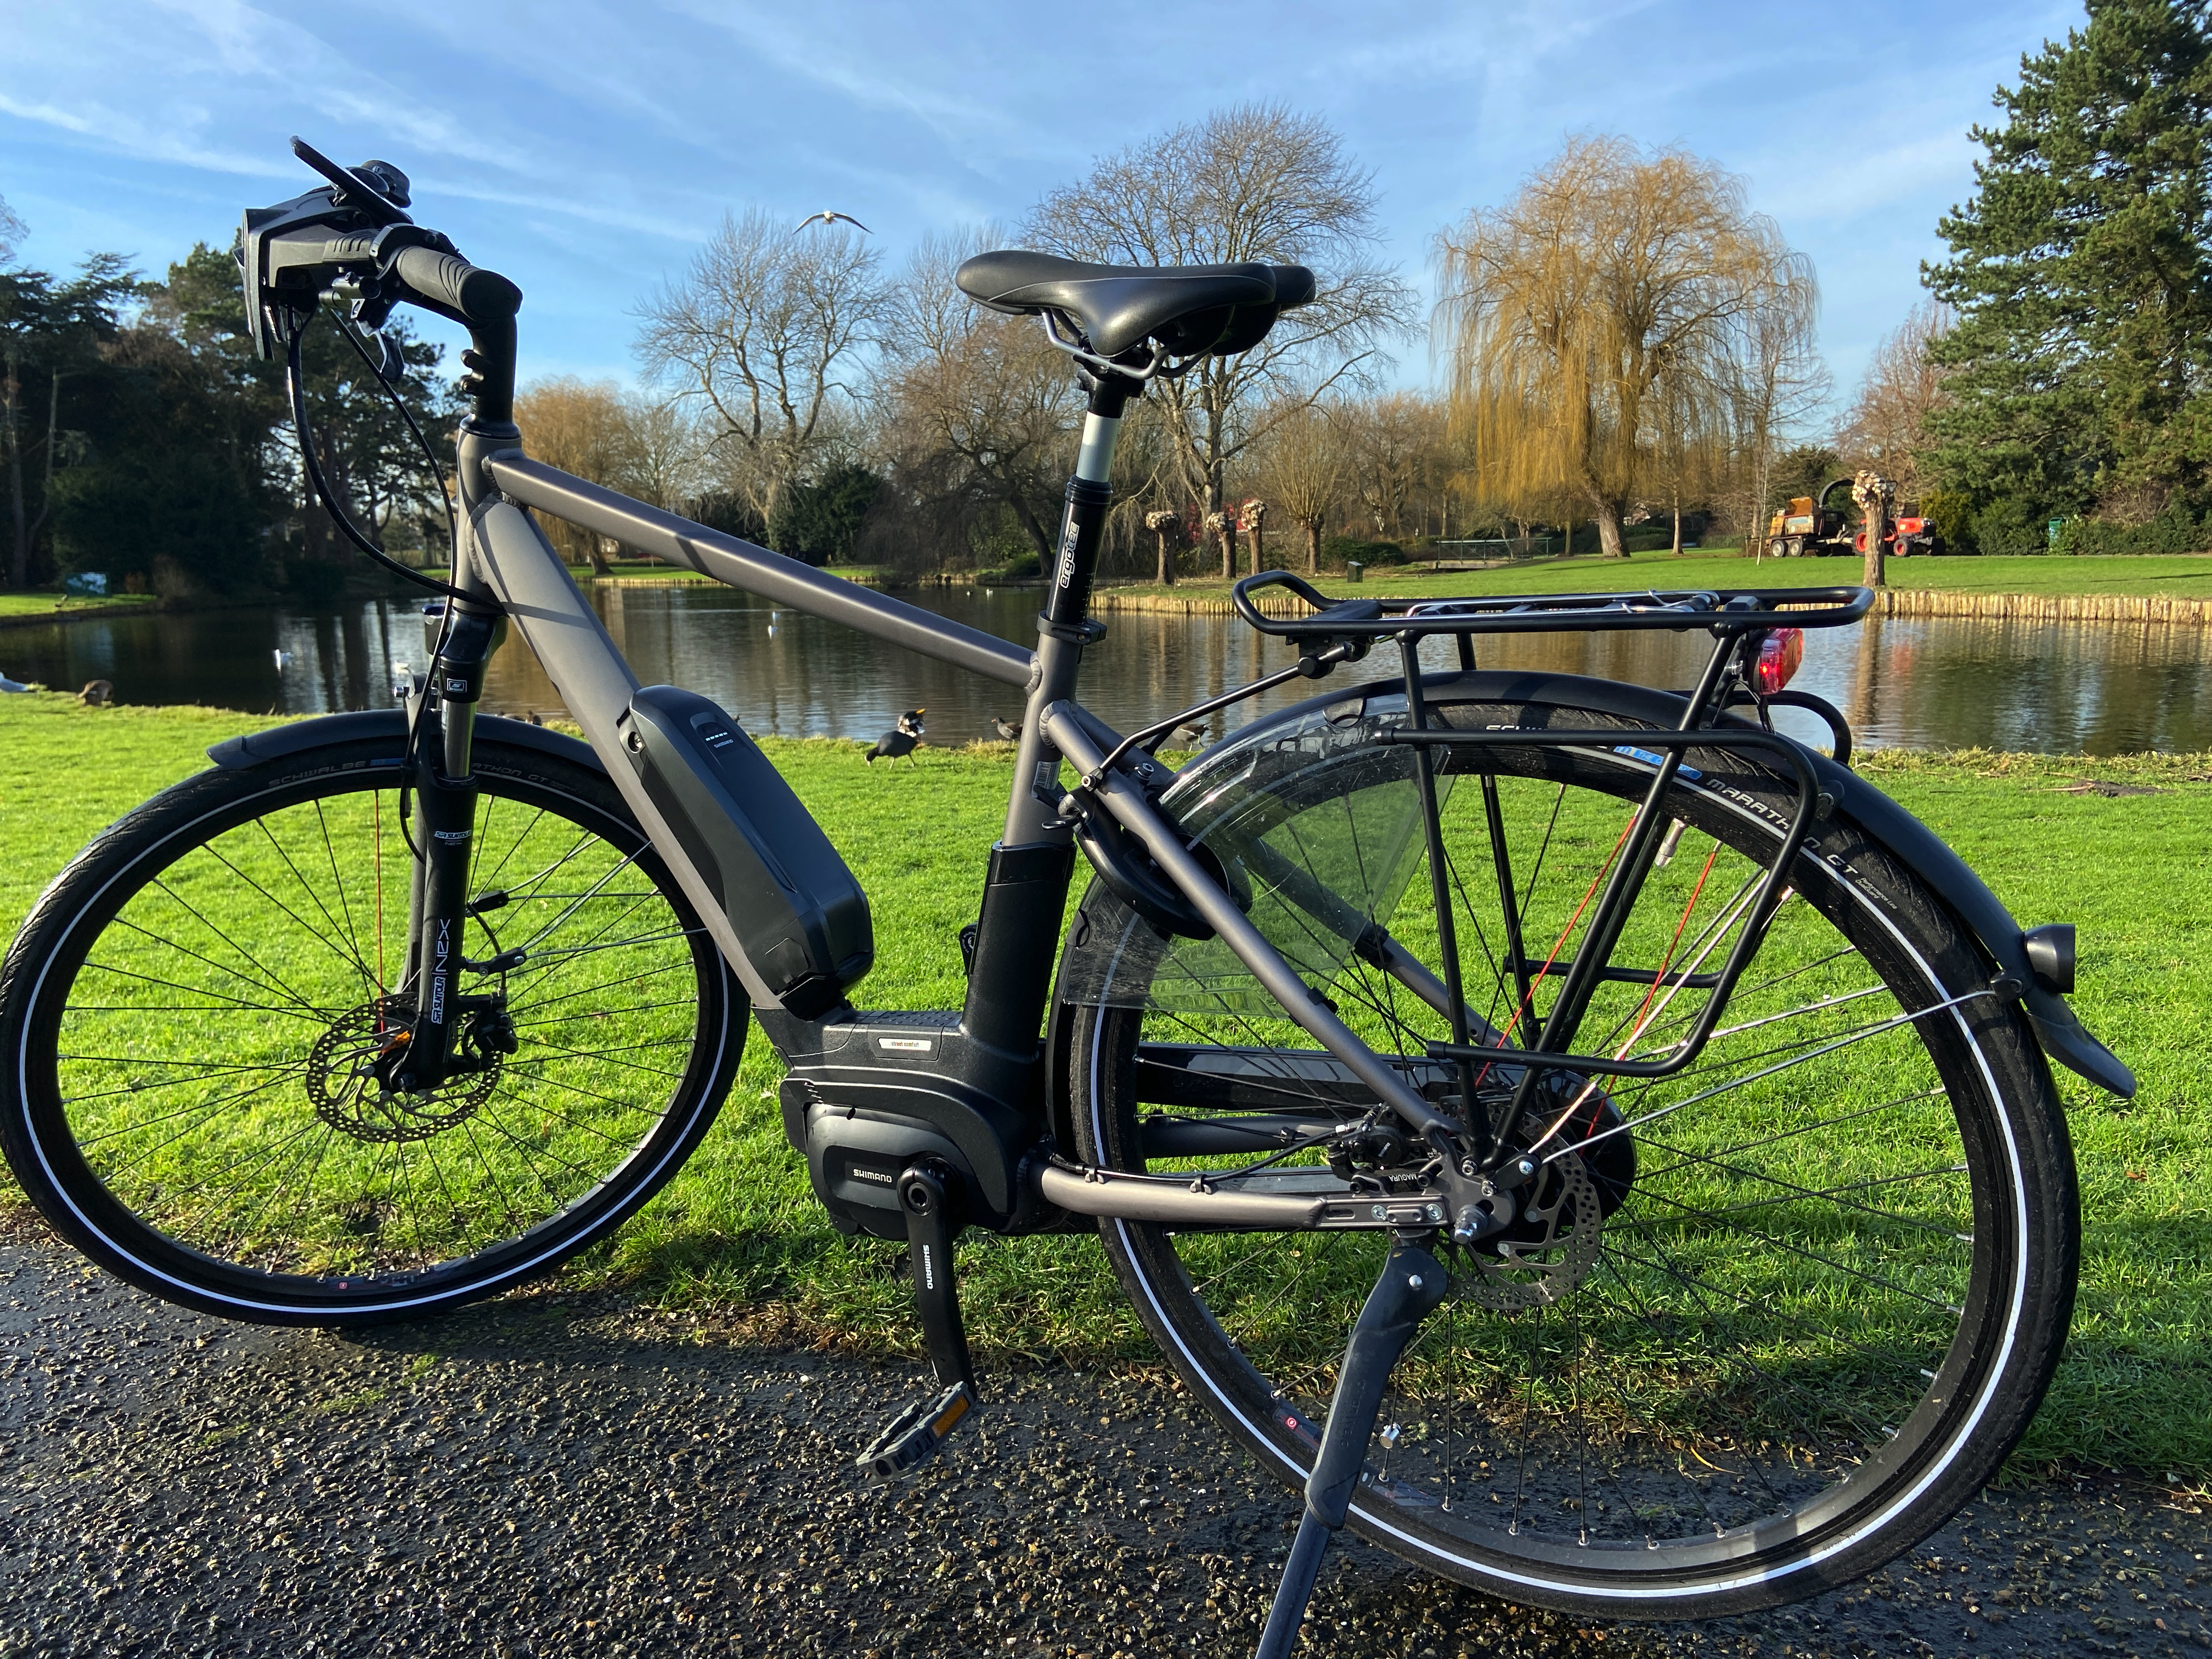 Jasje cent sensatie REVIEW] Kymco Street Comfort elektrische fiets: stoer en betrouwbaar